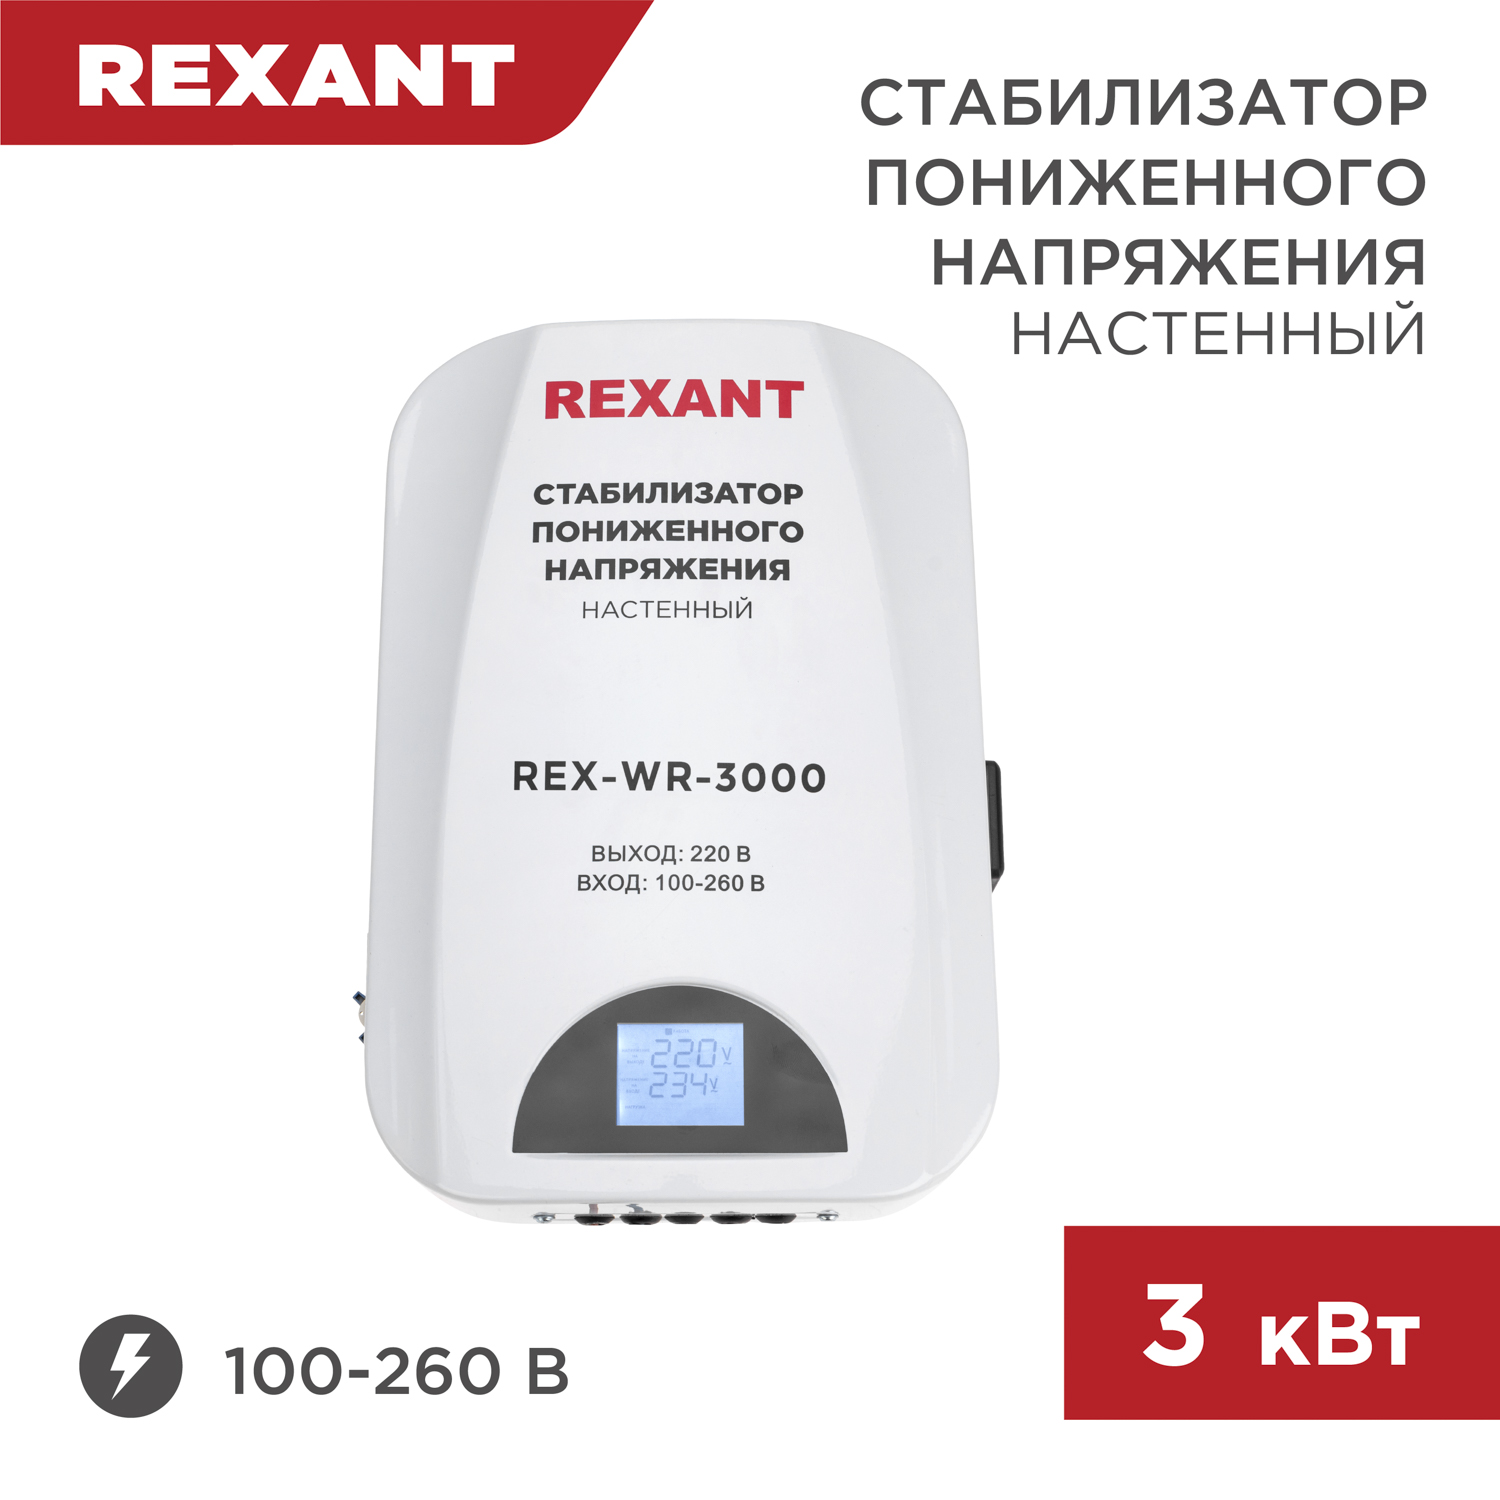 Стабилизатор пониженного напряжения настенный REXANT REX-WR-3000 11-5045